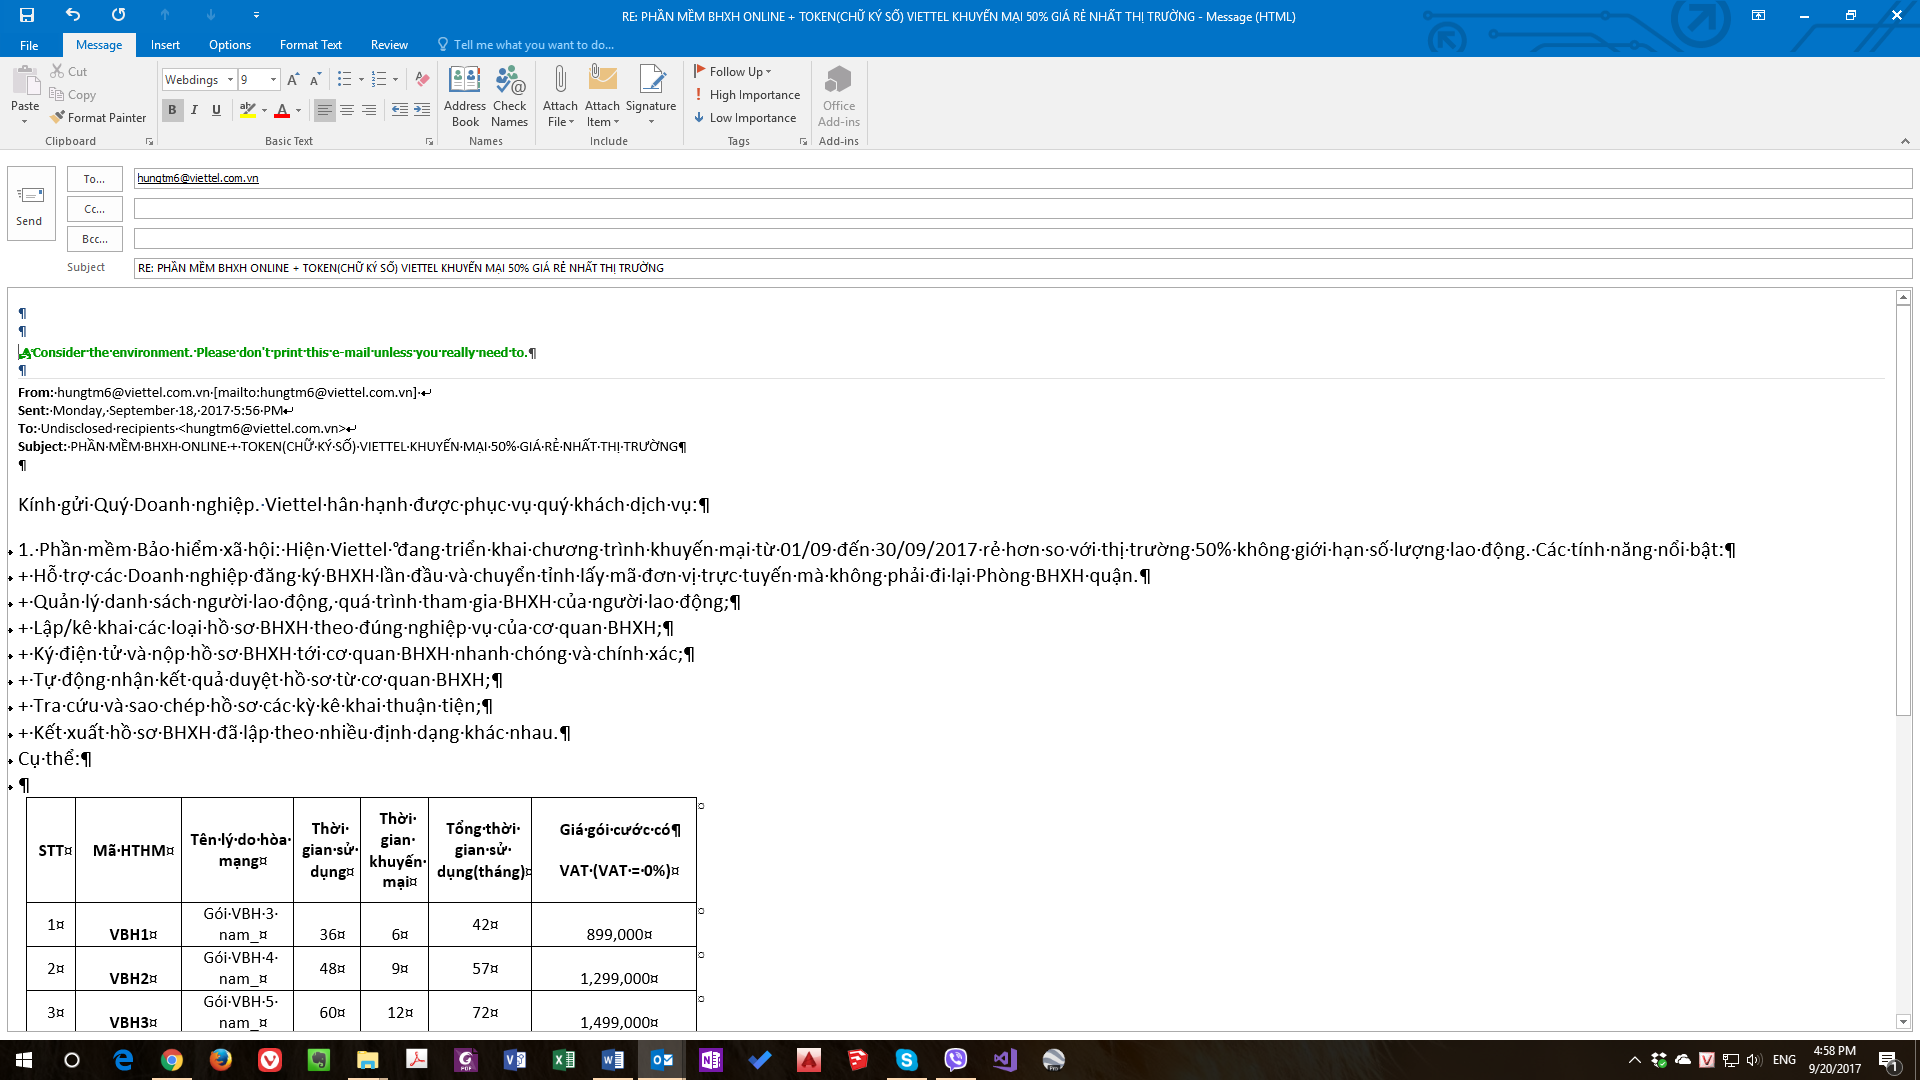 Phiên bản Outlook 2024 đã giúp sửa lỗi font chữ trên WIN 10 khiến việc sử dụng Outlook dễ dàng và tiện lợi hơn. Những thay đổi và cập nhật mới cùng với tính năng đổi font chữ linh hoạt giúp cho việc sử dụng Outlook trở nên dễ dàng và thuận tiện hơn.